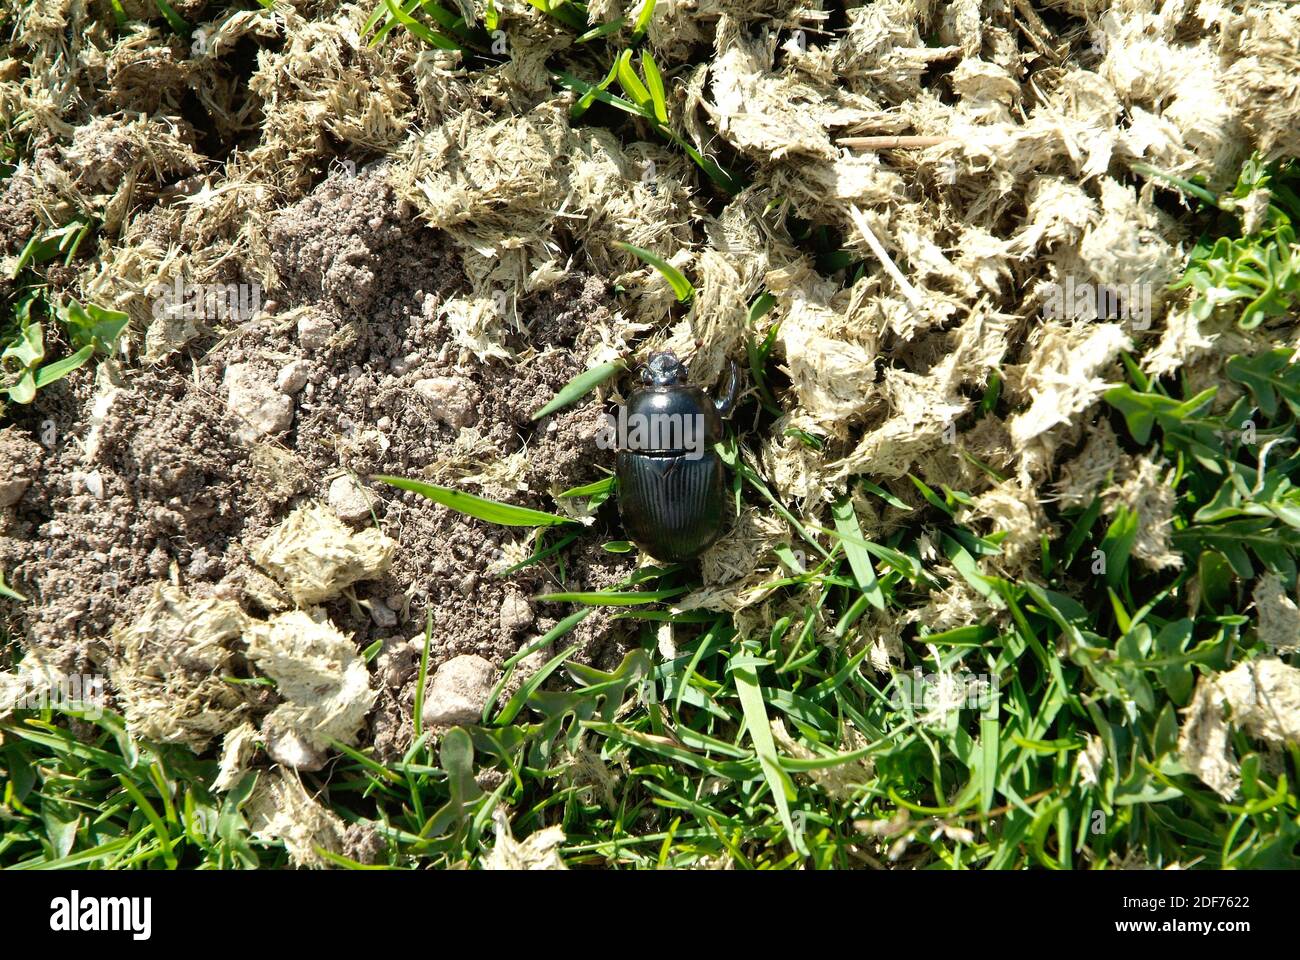 El escarabajo de estiércol (Geotrabes stercorarius) es un escarabajo coprofago nativo de Europa y Oriente próximo. Foto de stock